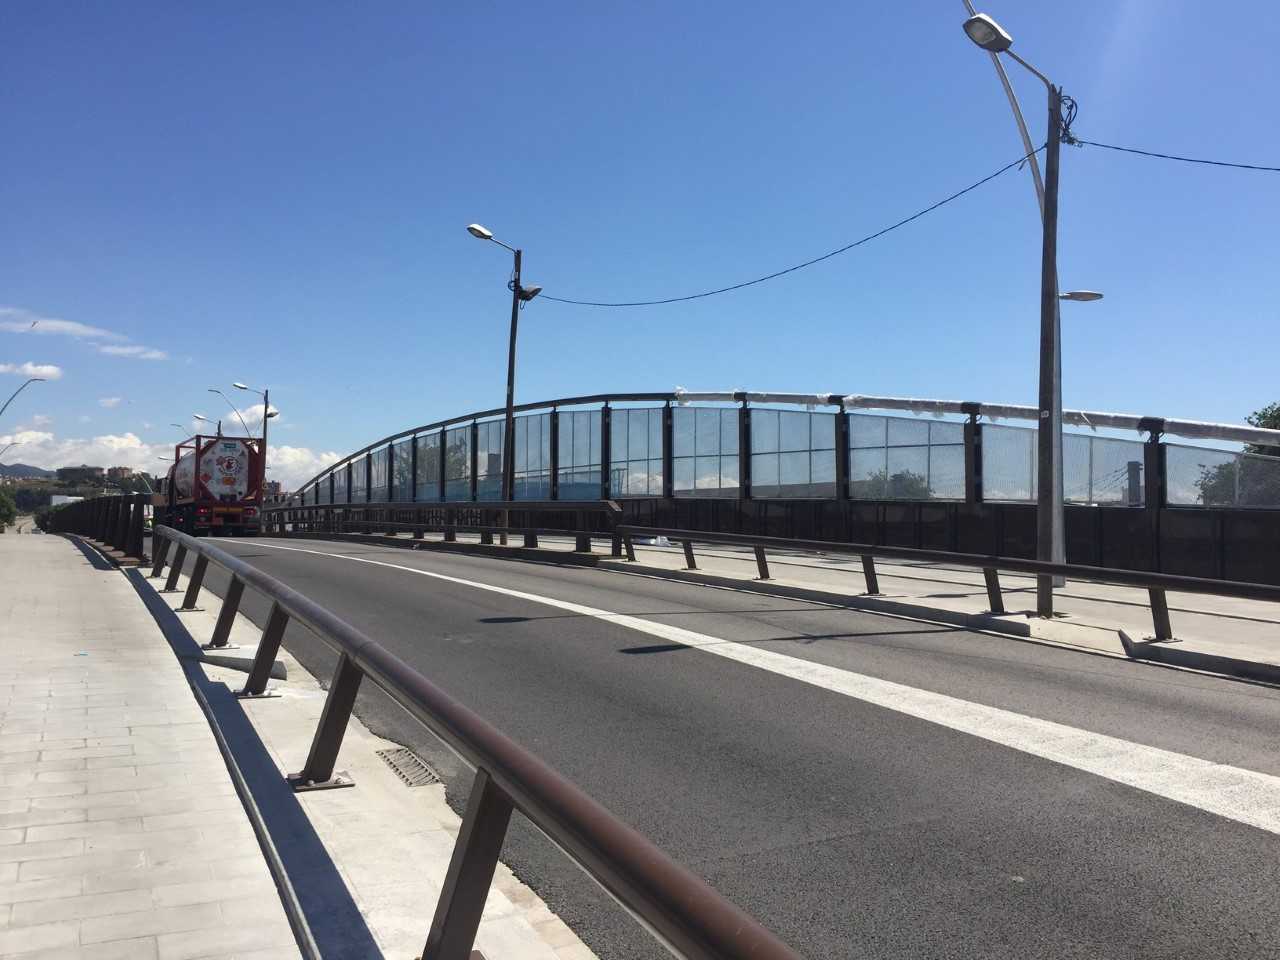 Barcelona inaugura el nuevo puente de Santander que permite comunicar mejor Sant Andreu y Sant Martí